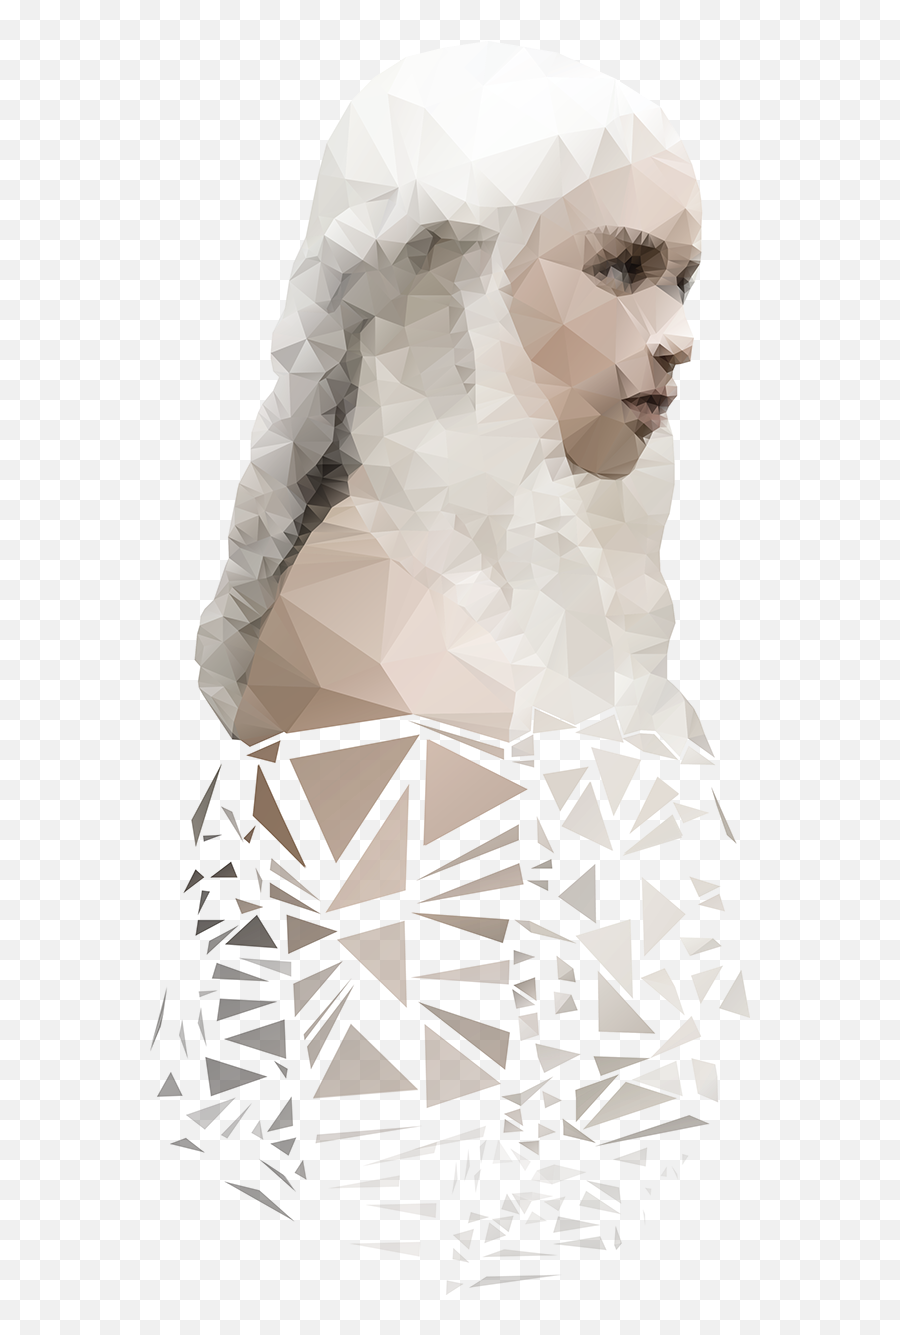 Polygon Portrait - Daenerys Targaryen On Behance Cocktail Dress Png,Daenerys Png